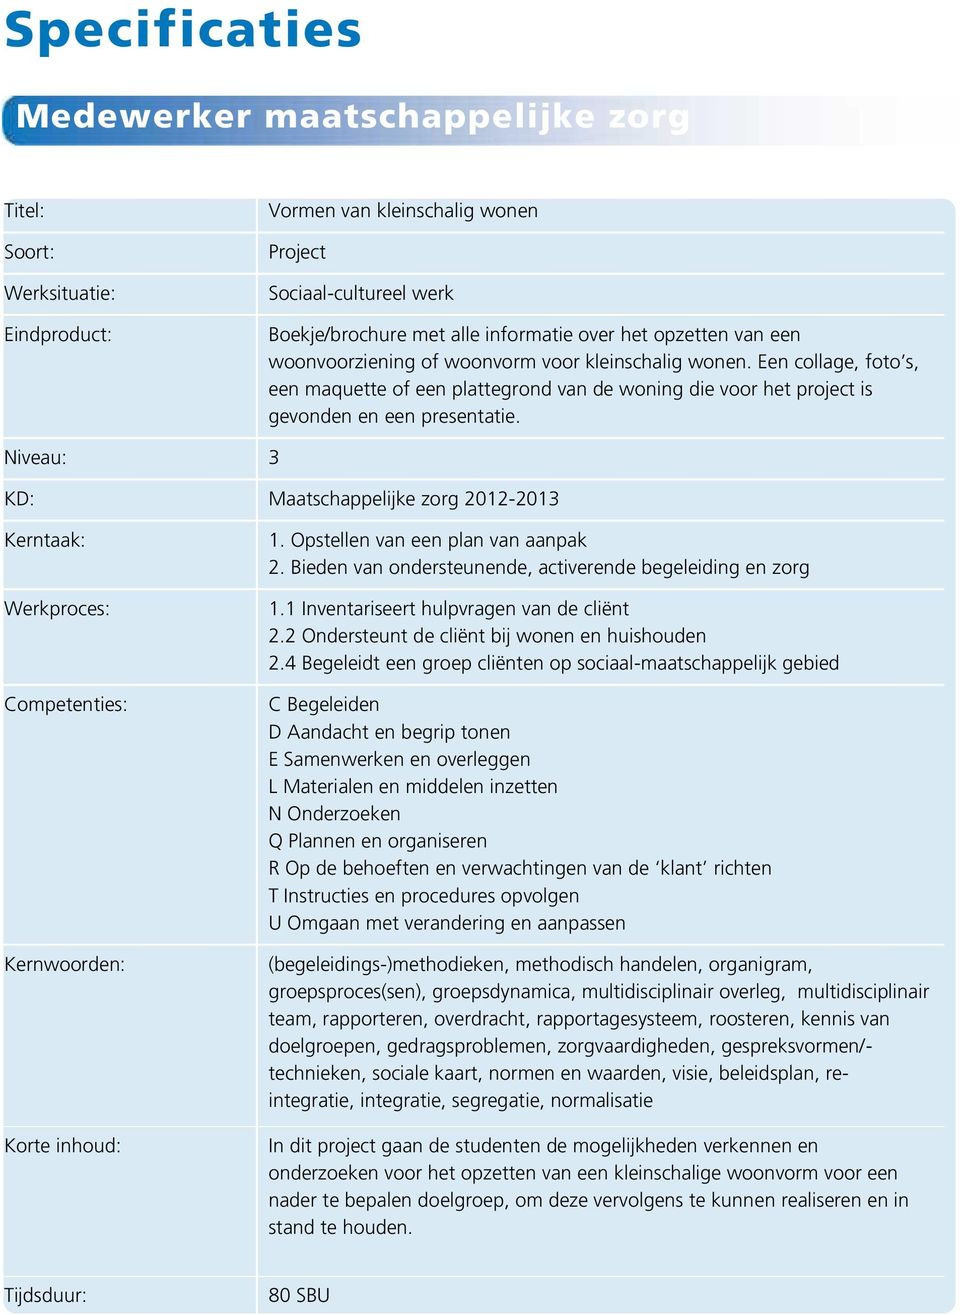 Niveau: 3 KD: Maatschappelijke zorg 2012-2013 Kerntaak: Werkproces: Competenties: Kernwoorden: Korte inhoud: 1. Opstellen van een plan van aanpak 2.